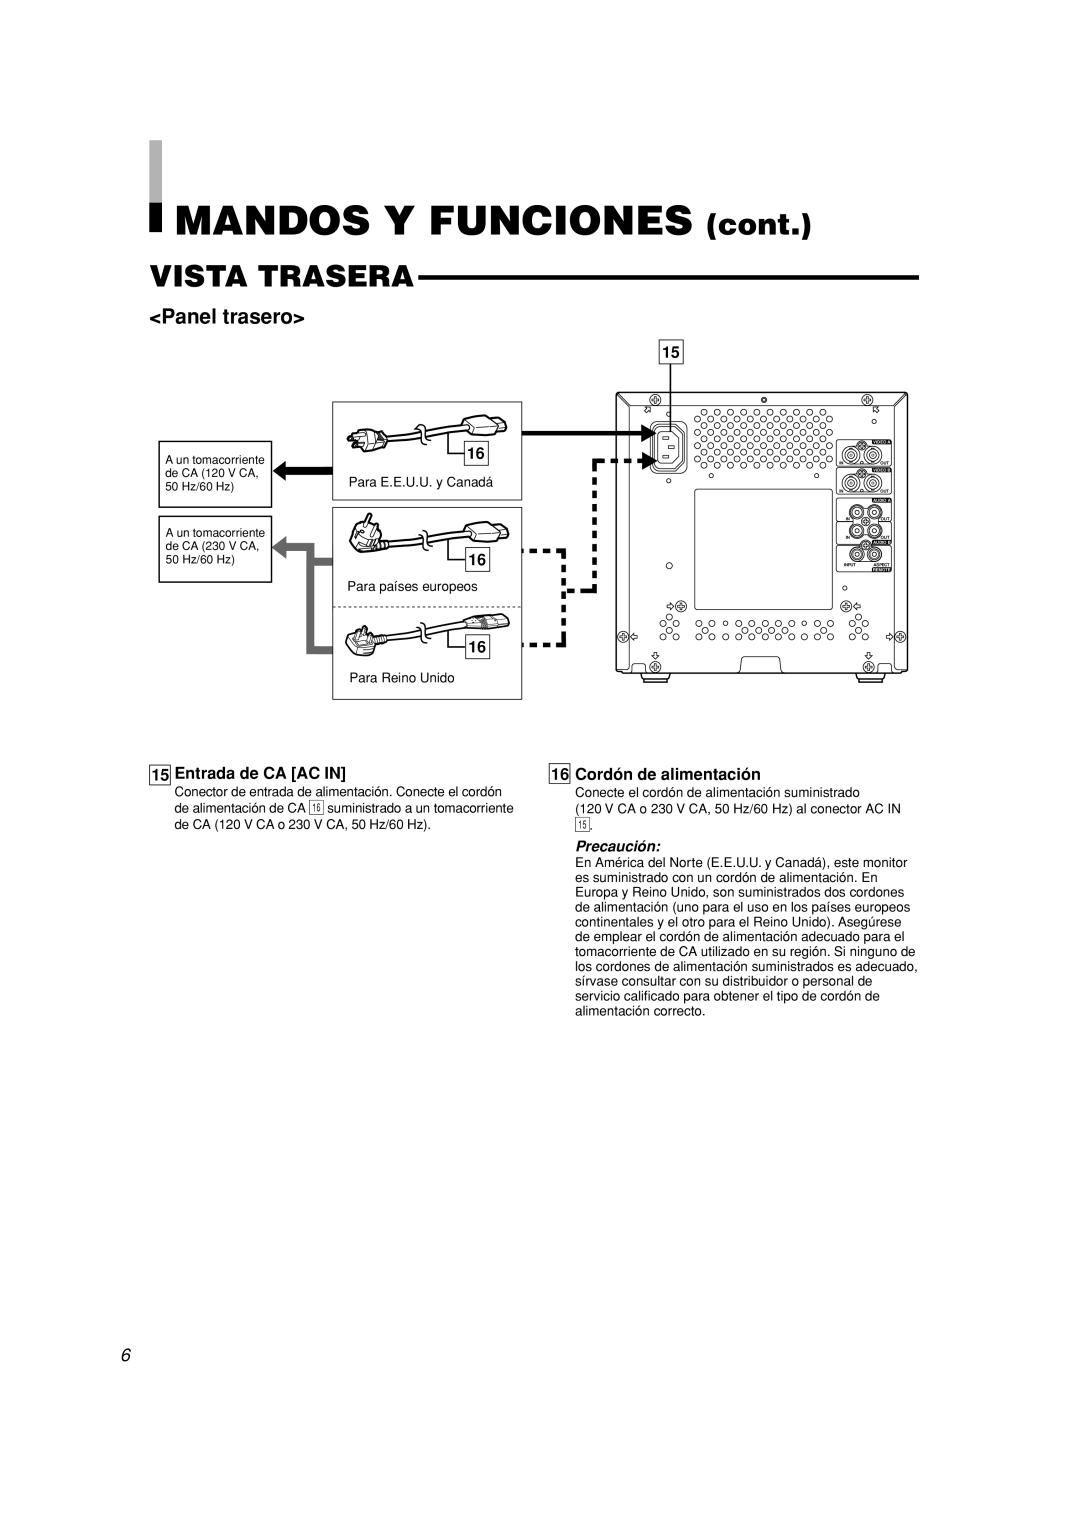 JVC TM-A101G manual MANDOS Y FUNCIONES cont, Entrada de CA AC IN, Cordón de alimentación, Precaución, Vista Trasera 